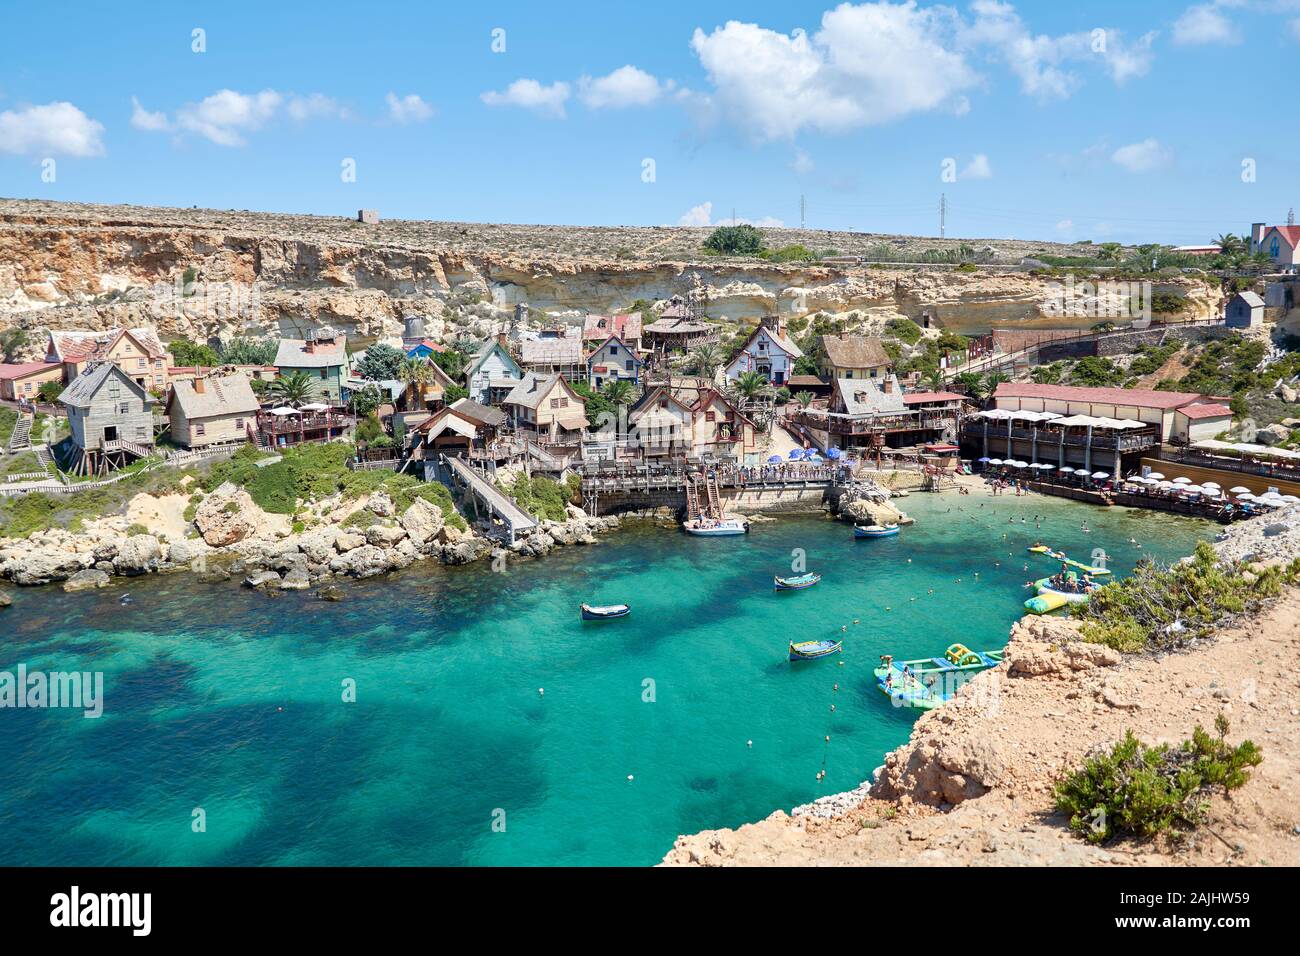 Mellieha, Malta - August 25, 2018: View over famous Popeye village in Il-Mellieha, Malta Stock Photo